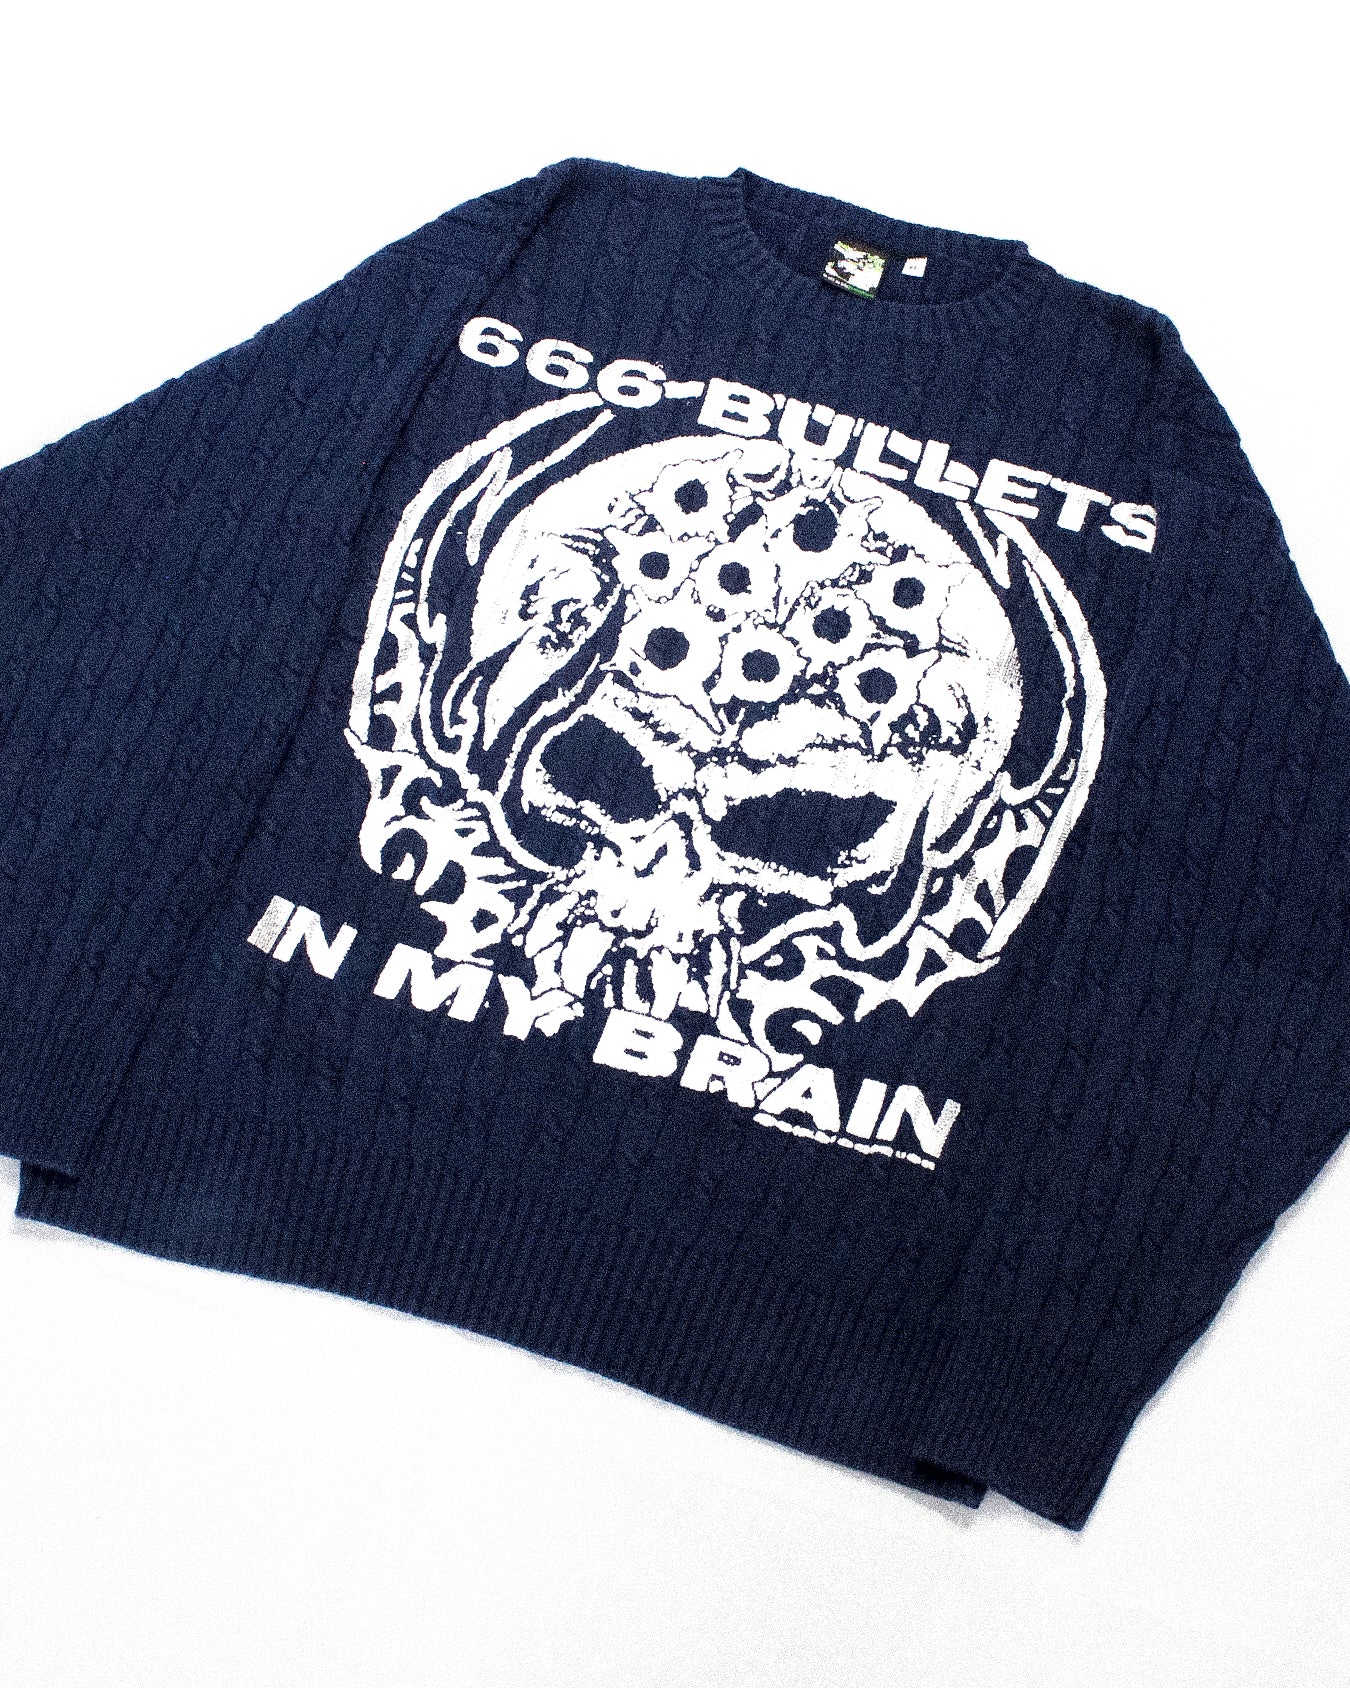 "666 BULLETS IN MY BRAIN" Heavyweight Knit Sweater (XL)